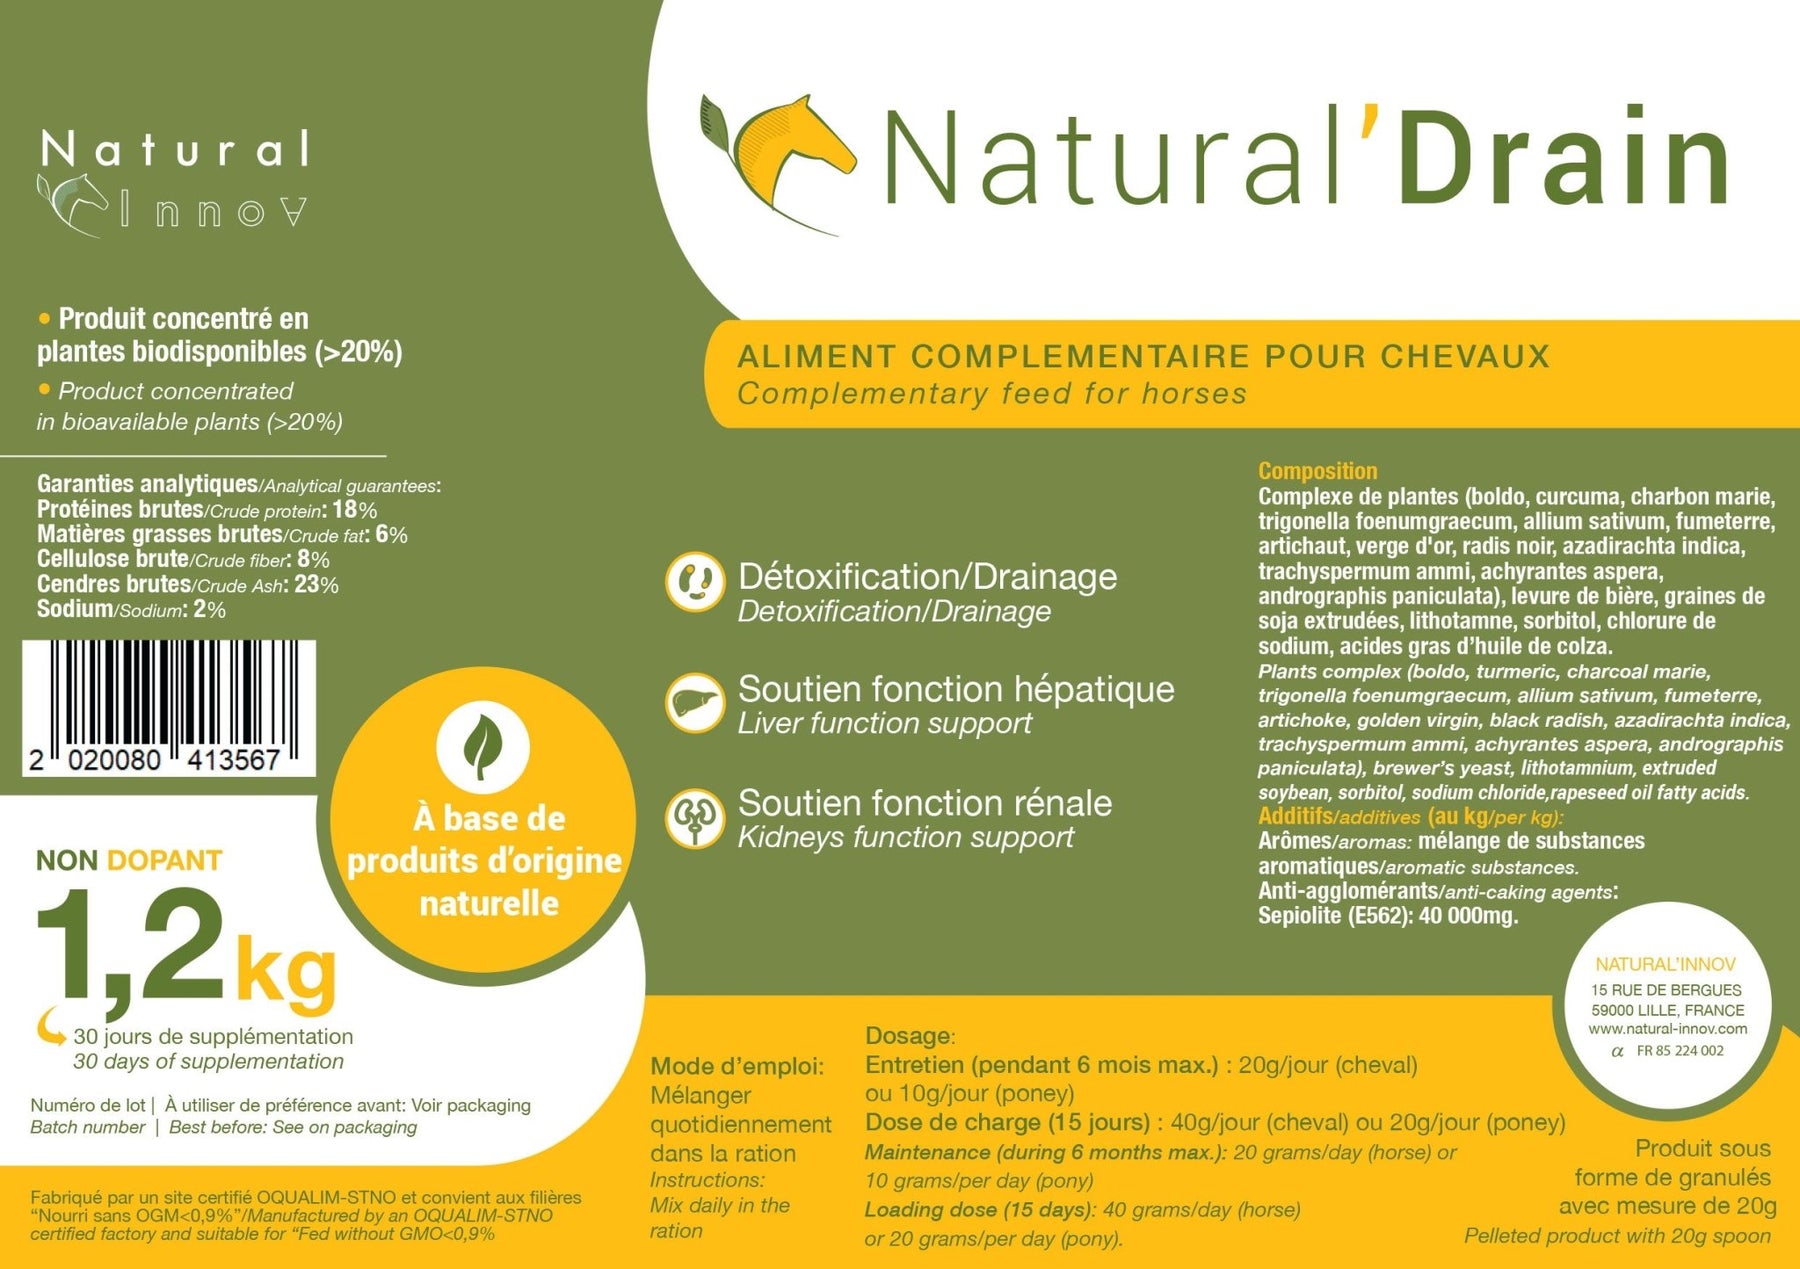 HENRY equestrian - Natural’ Innov - Συμπλήρωμα διατροφής Natural’ DRAIN 1,2 kg